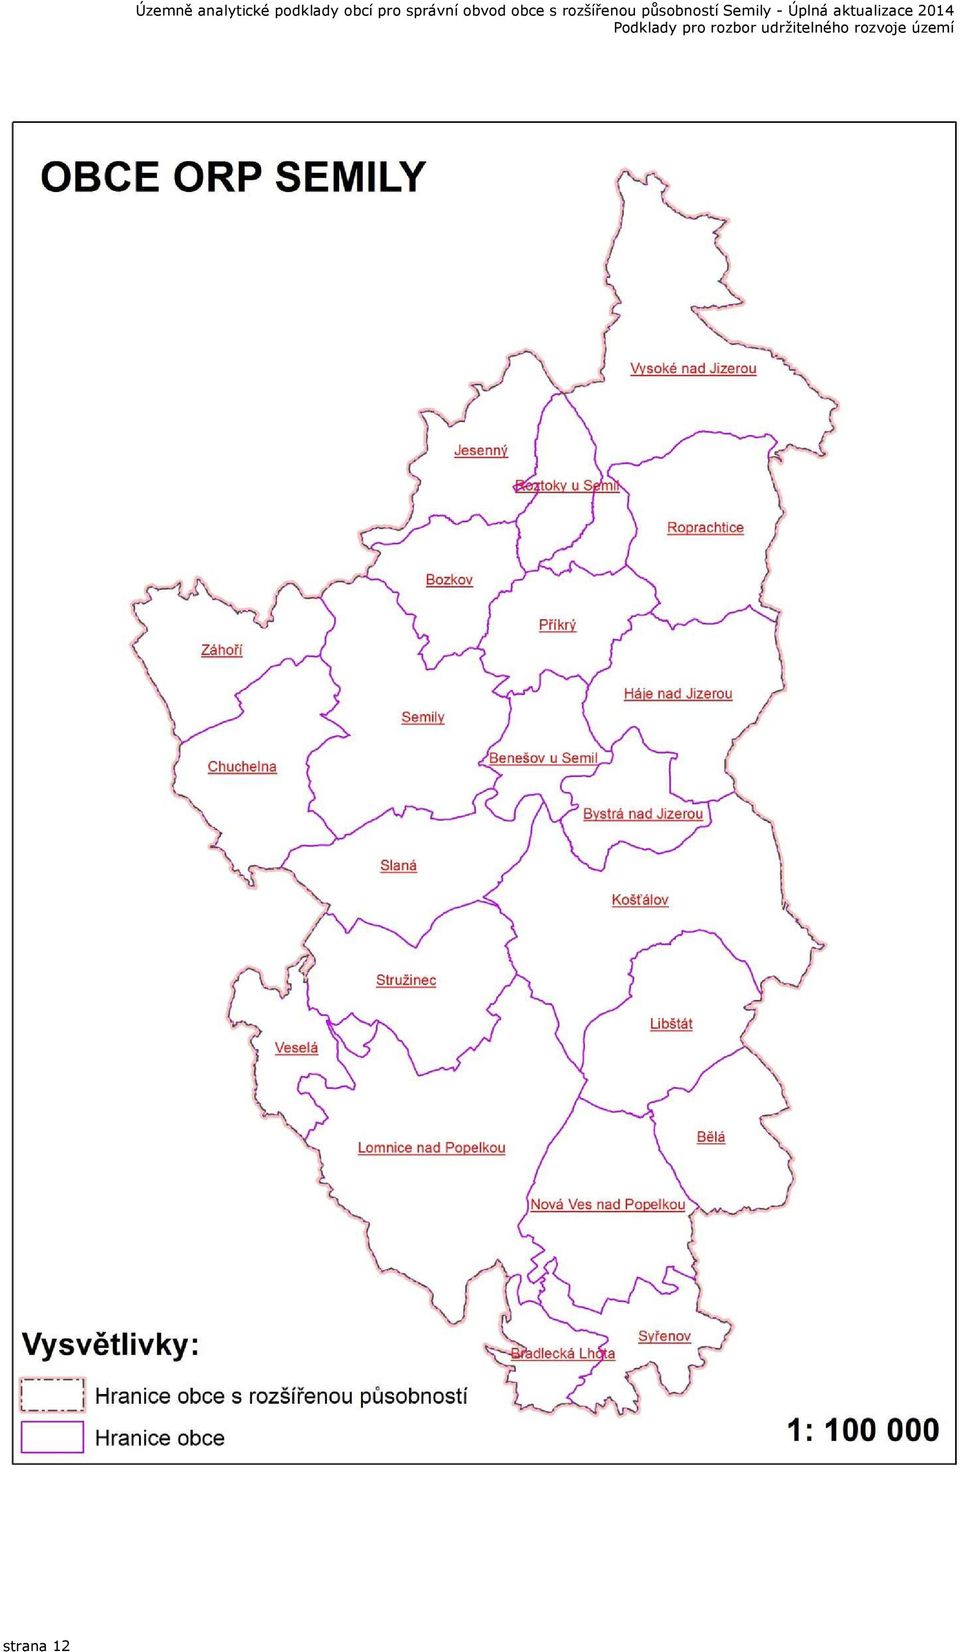 obvod obce s rozšířenou